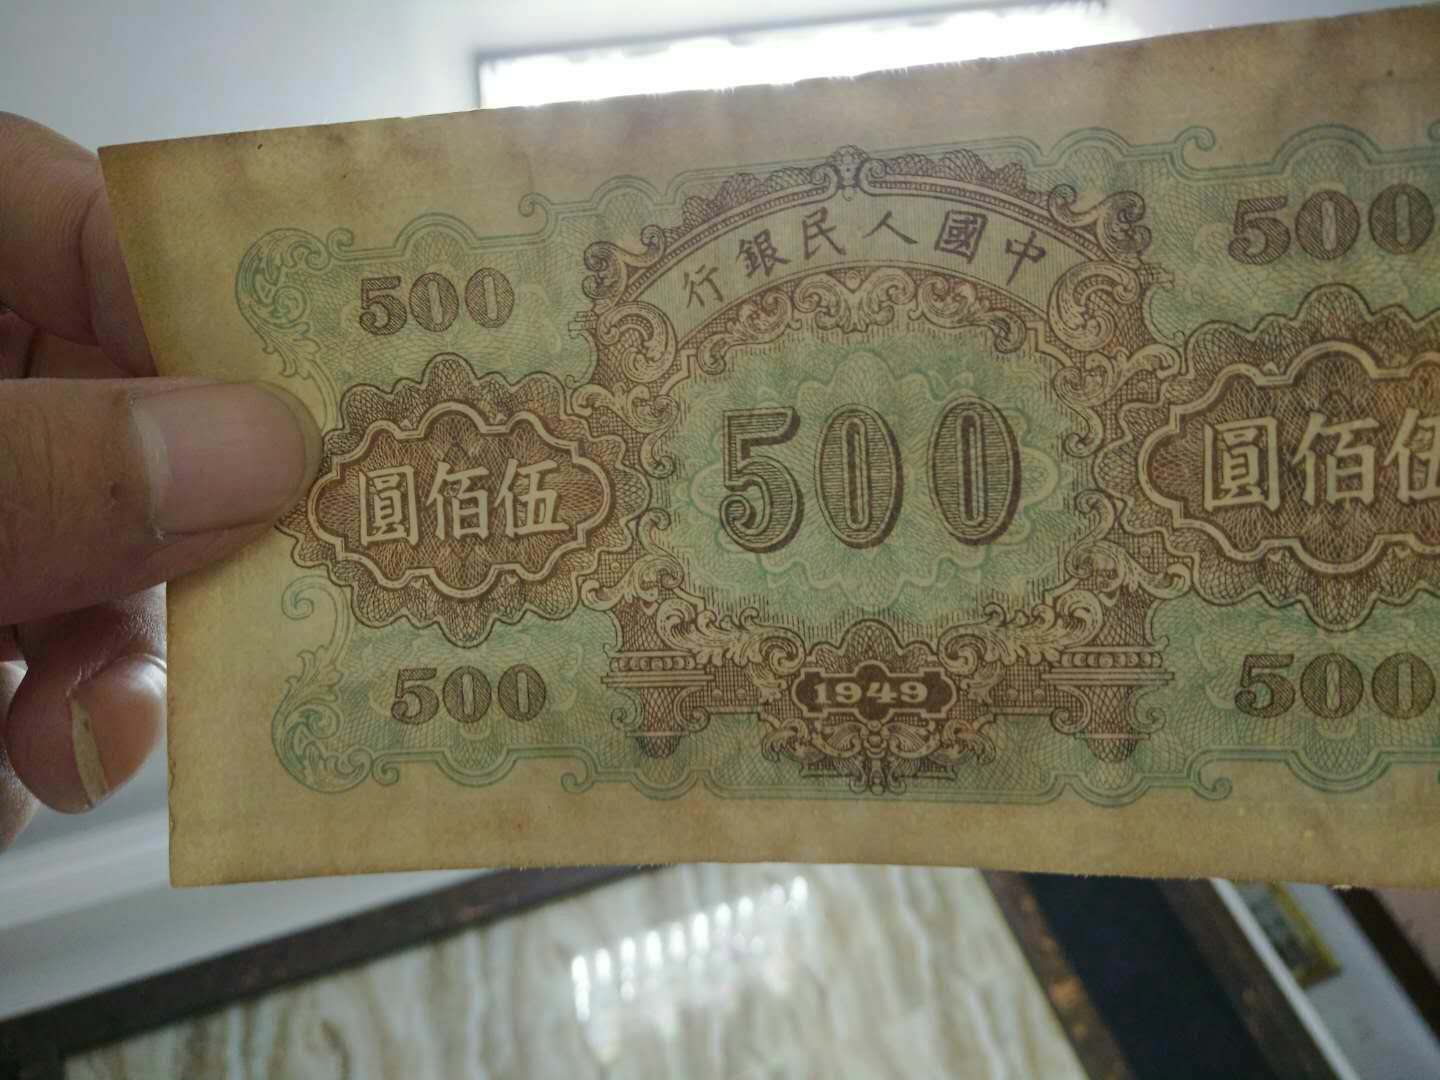 500元一张的人民币图片